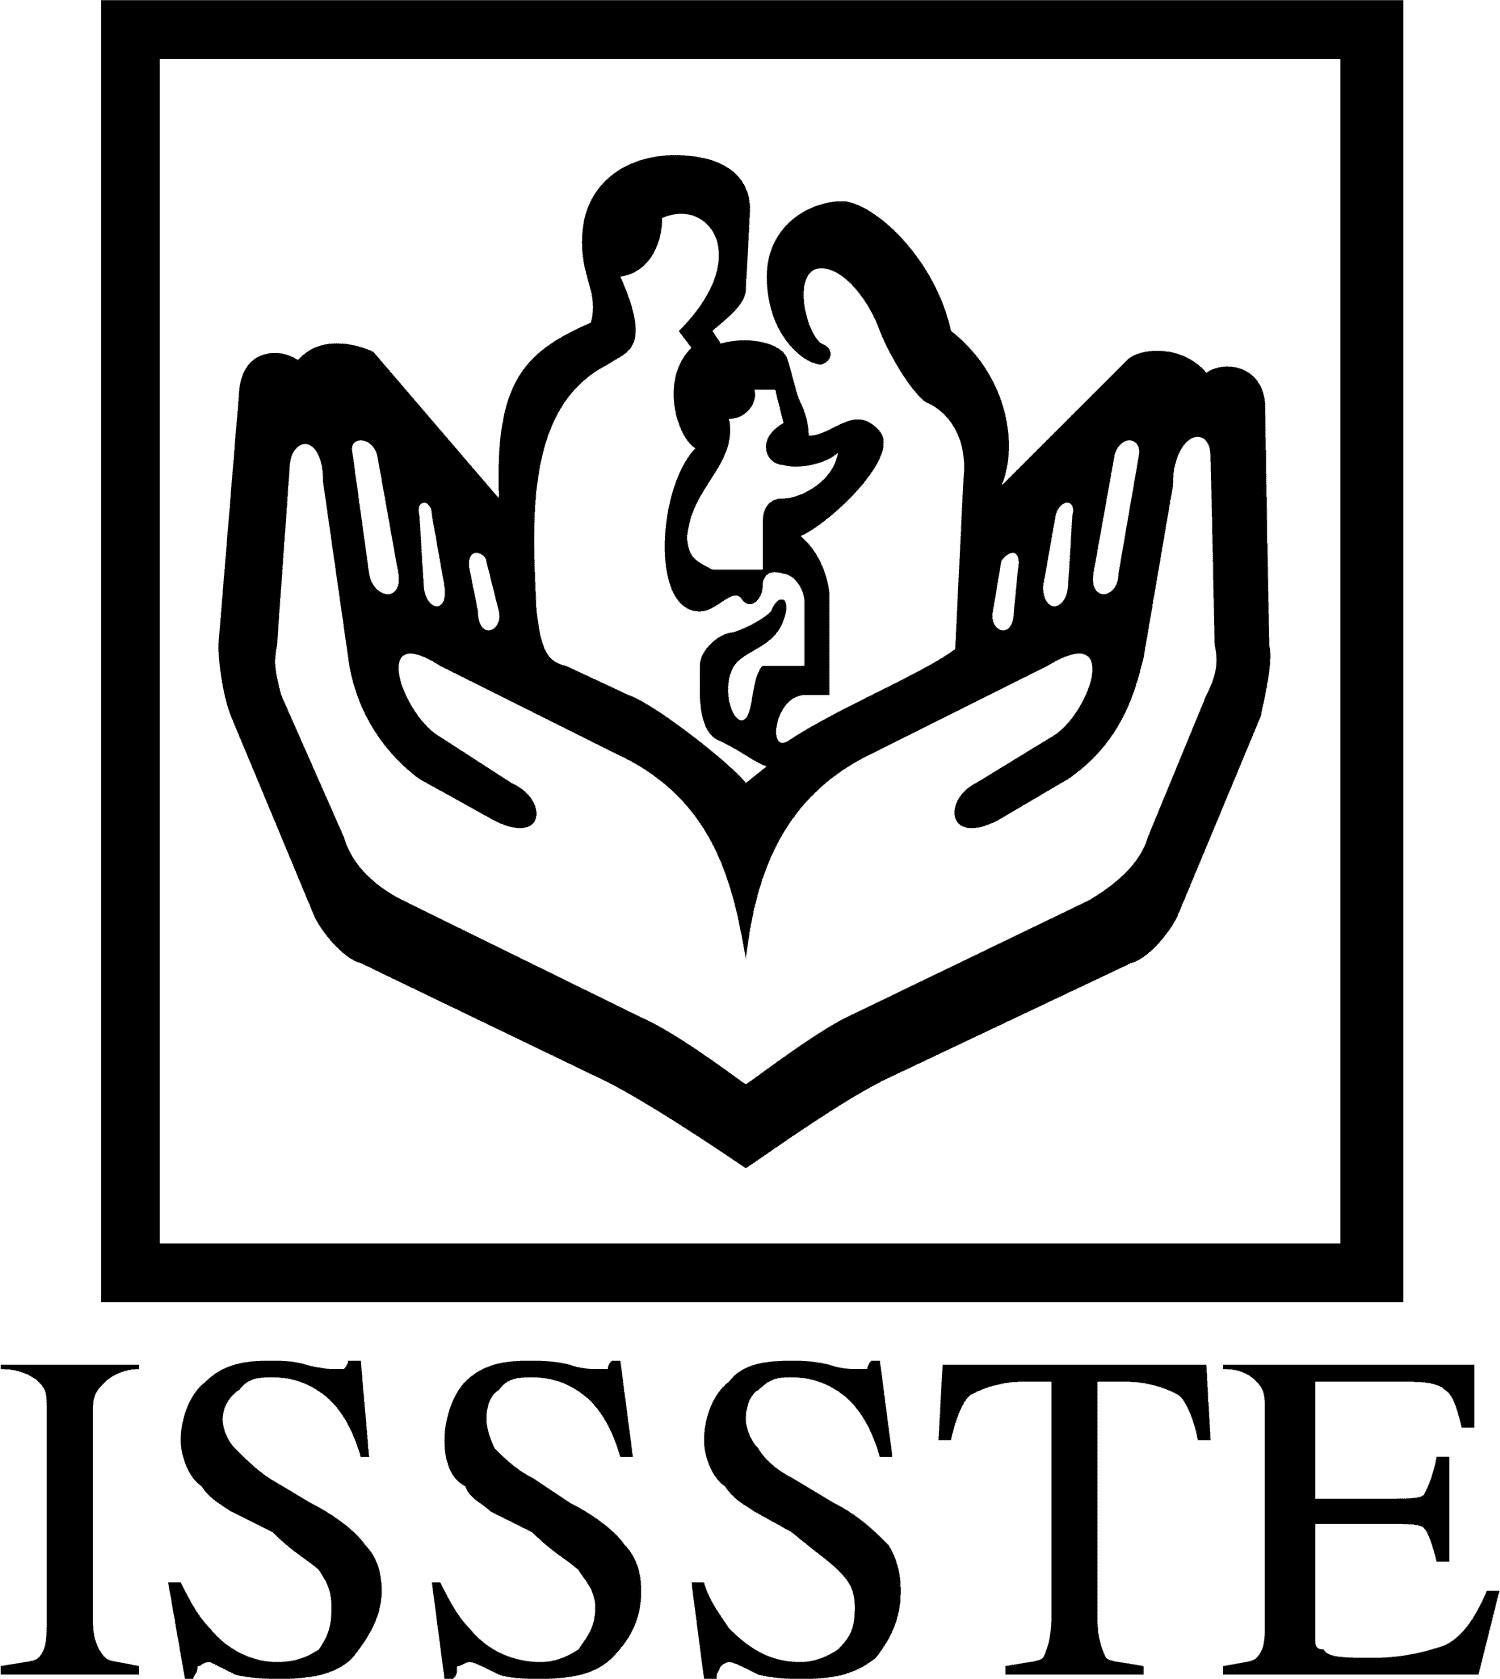 issste logo